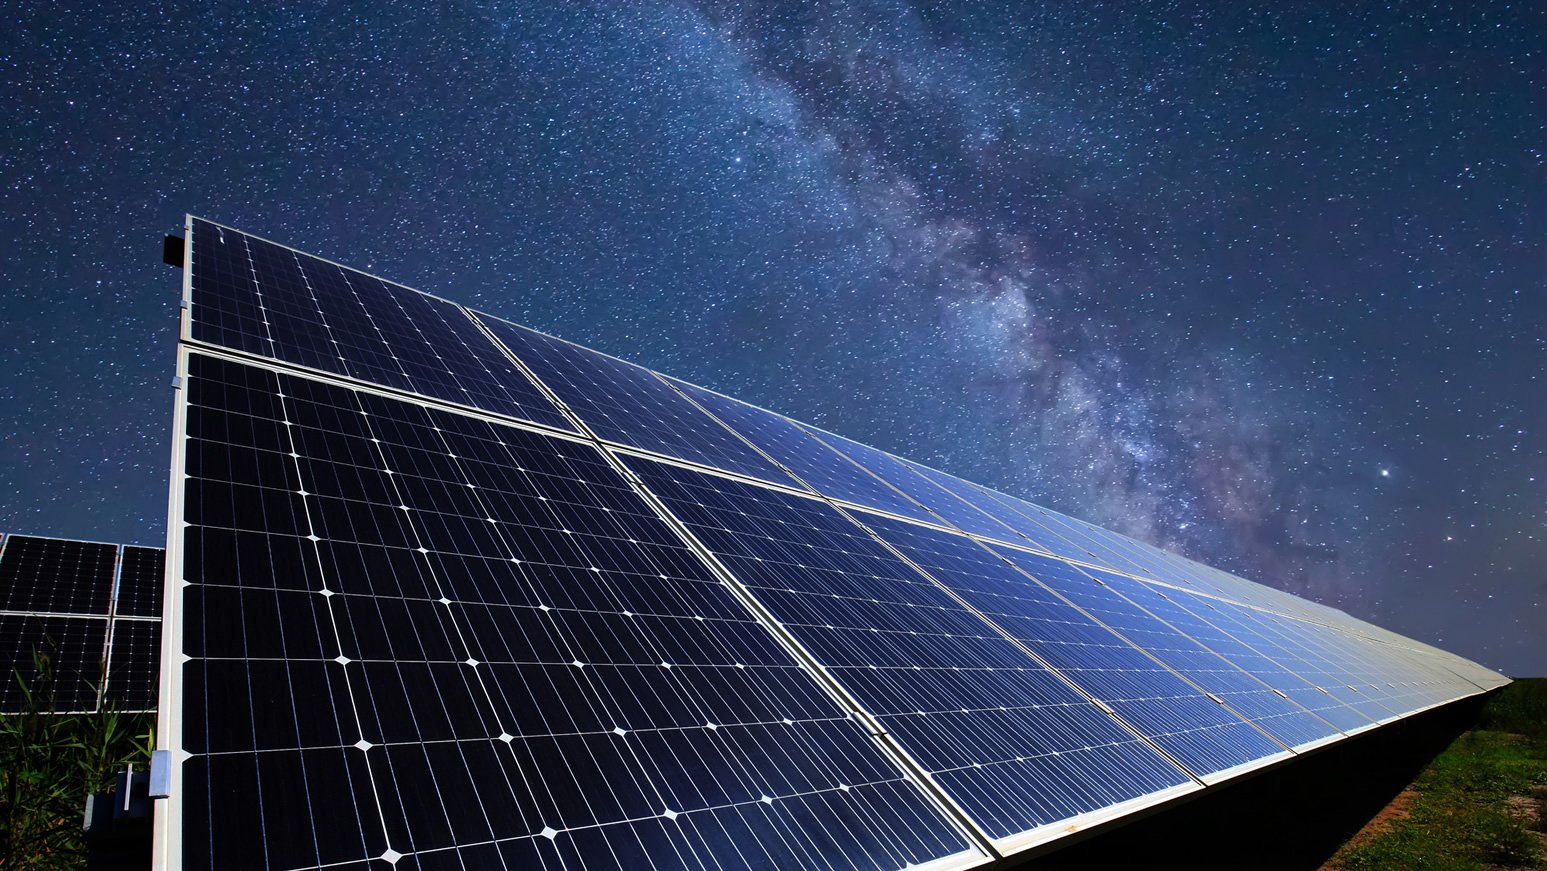 Pannelli solari che generano elettricità anche di notte - Il Blog di Beppe  Grillo